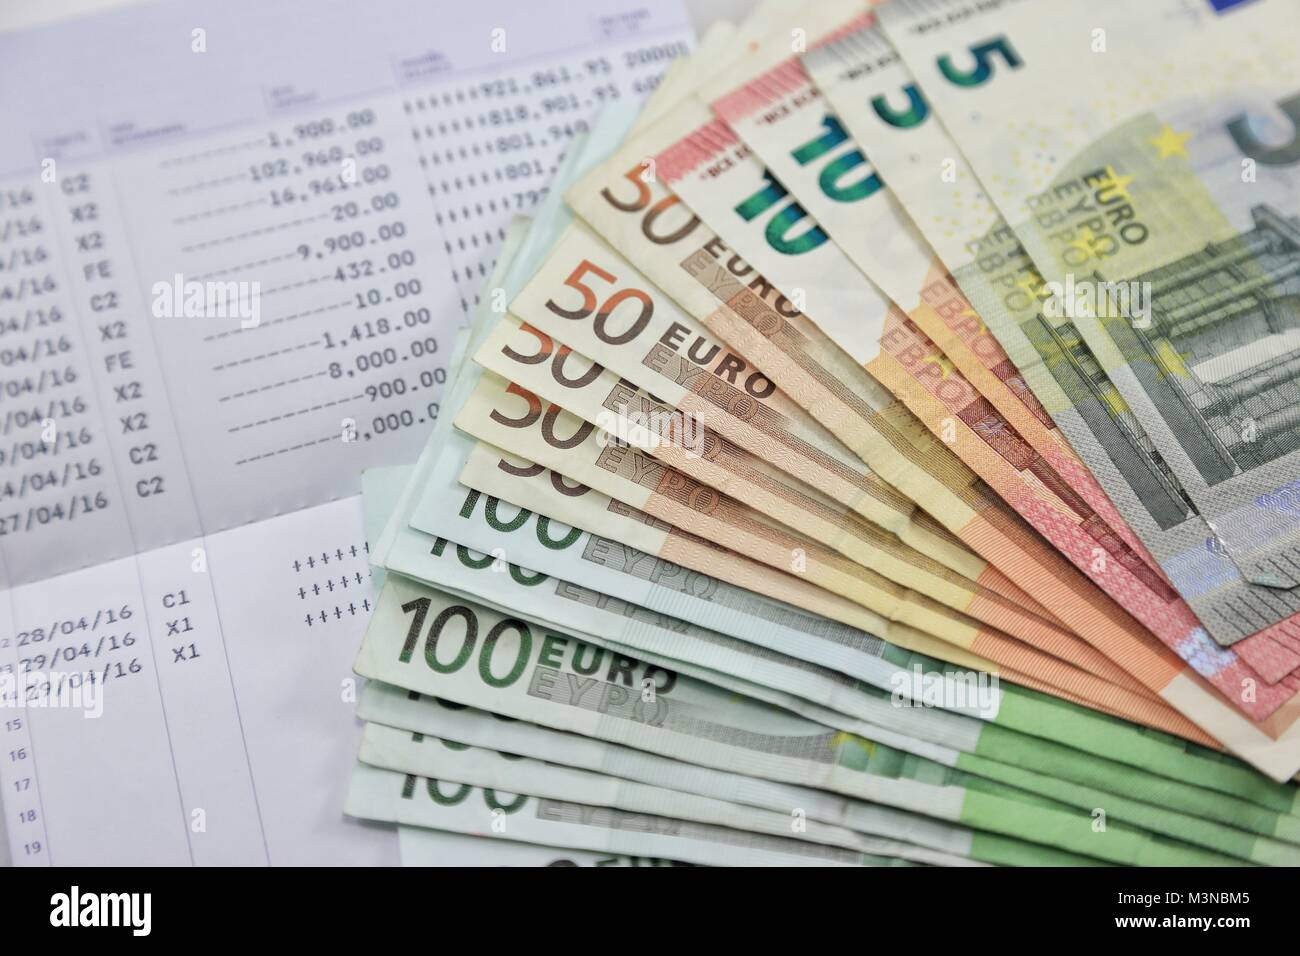 Viele Euro-Banknoten und Bankkonto passbook zeigen viele Transaktionen. Konzept und Idee, Geld zu sparen, Investitionen, Zinsen, Bank Darlehen, Inflation Stockfoto